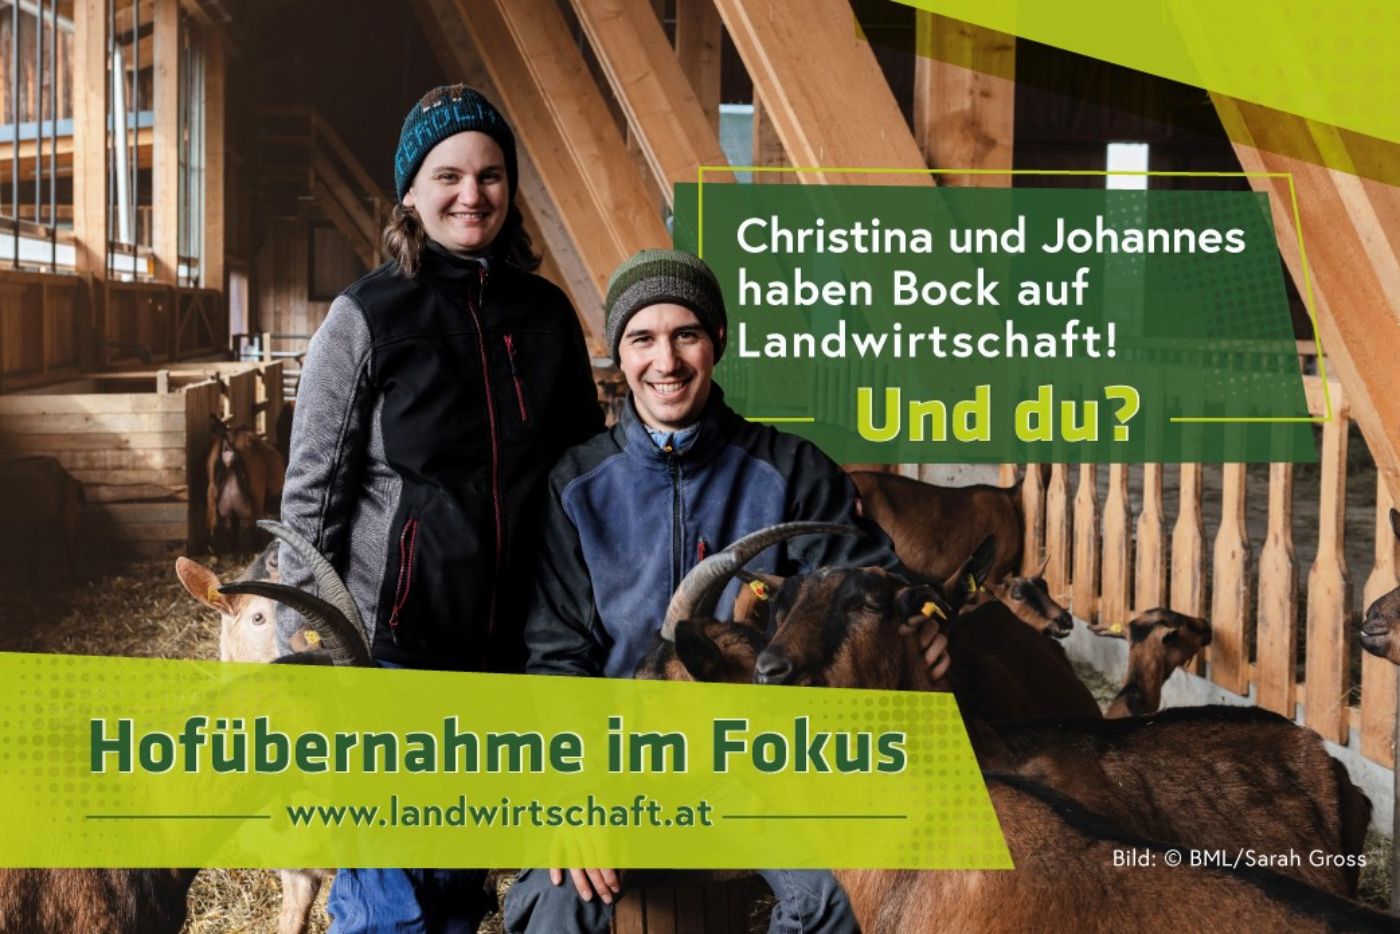 Christina und Johannes haben Bock auf Landwirtschaft! Und du? Hofübernahme im Fokus: www.landwirtschaft.at